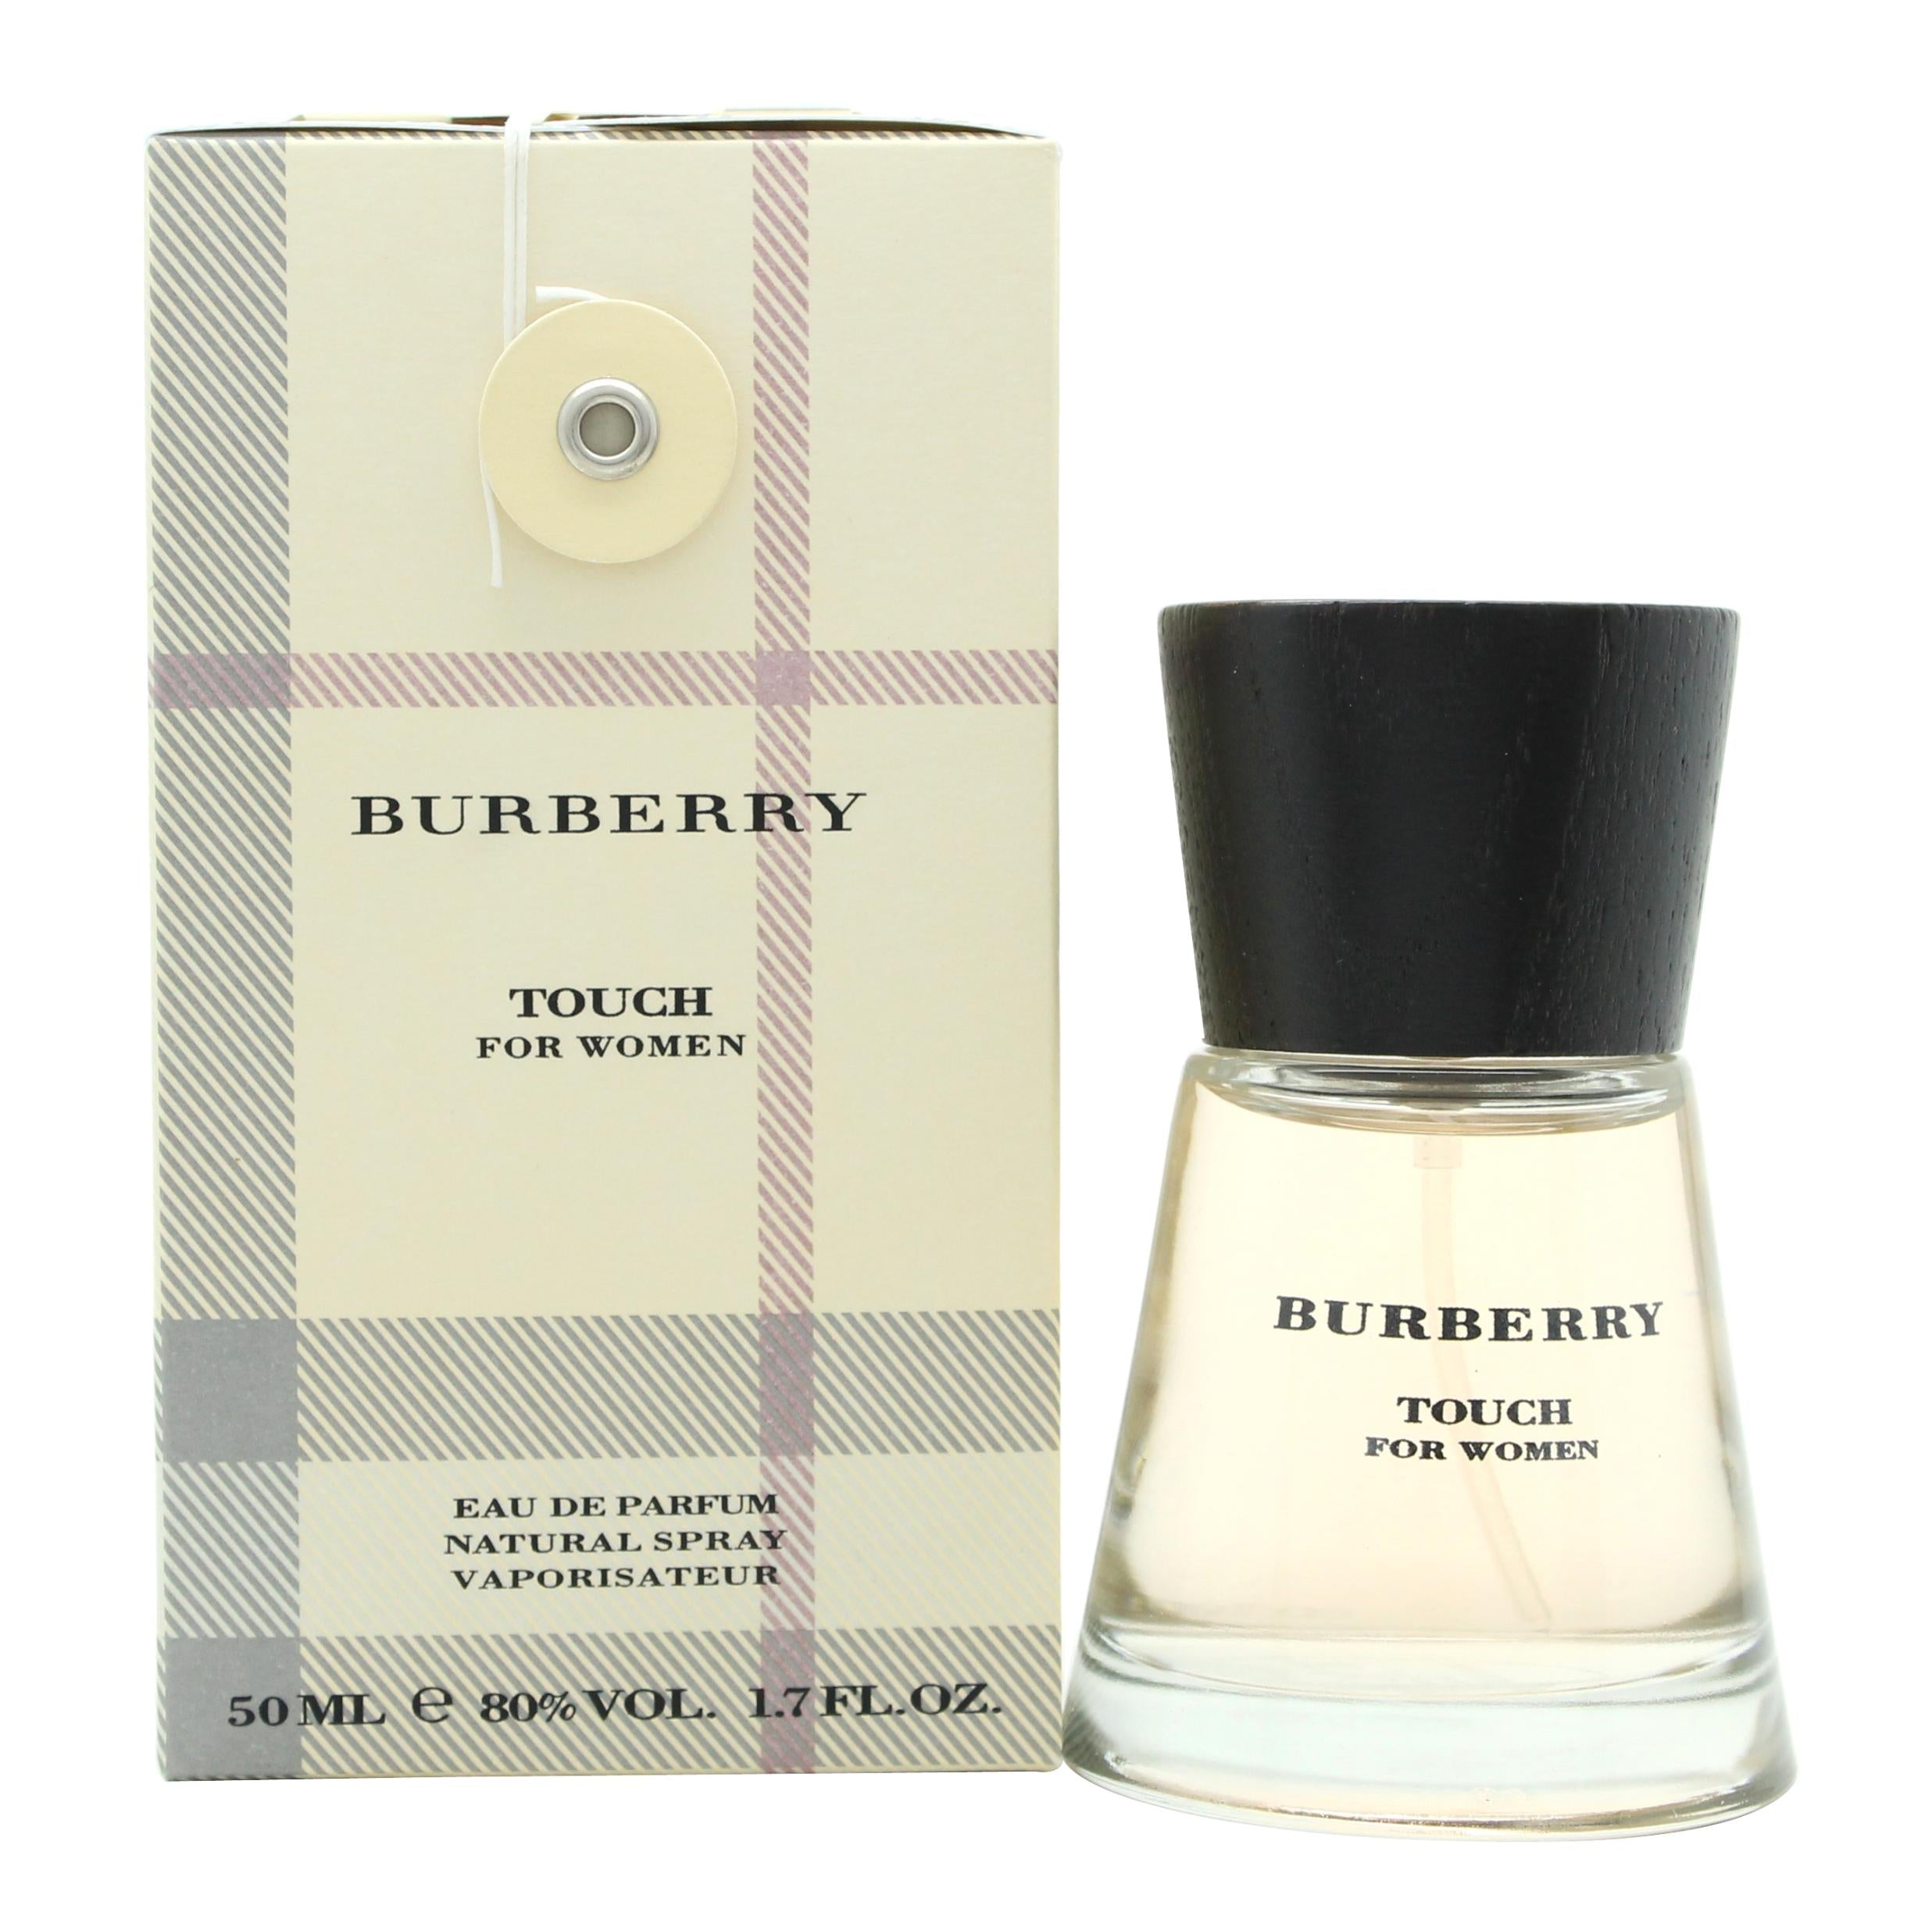 View Burberry Touch Eau de Parfum 50ml Spray information